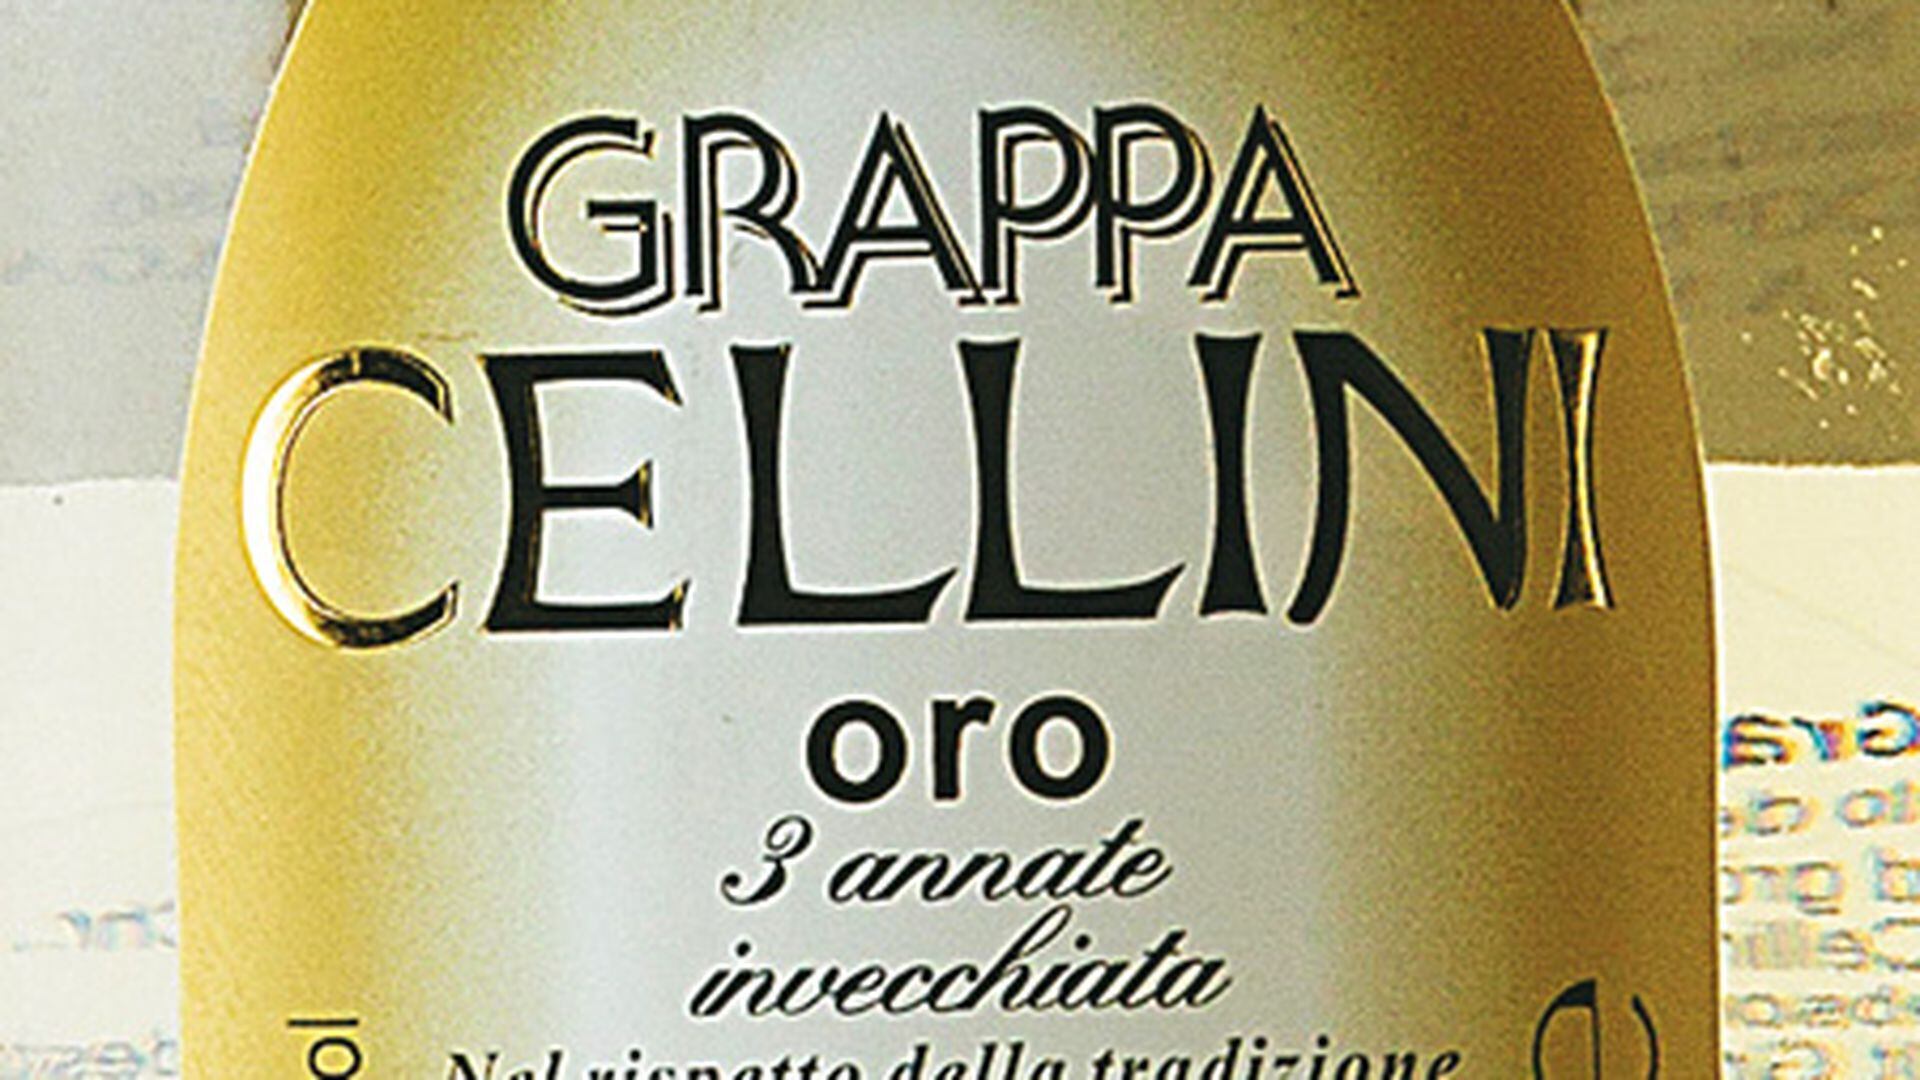 Oro Grappa Cellini